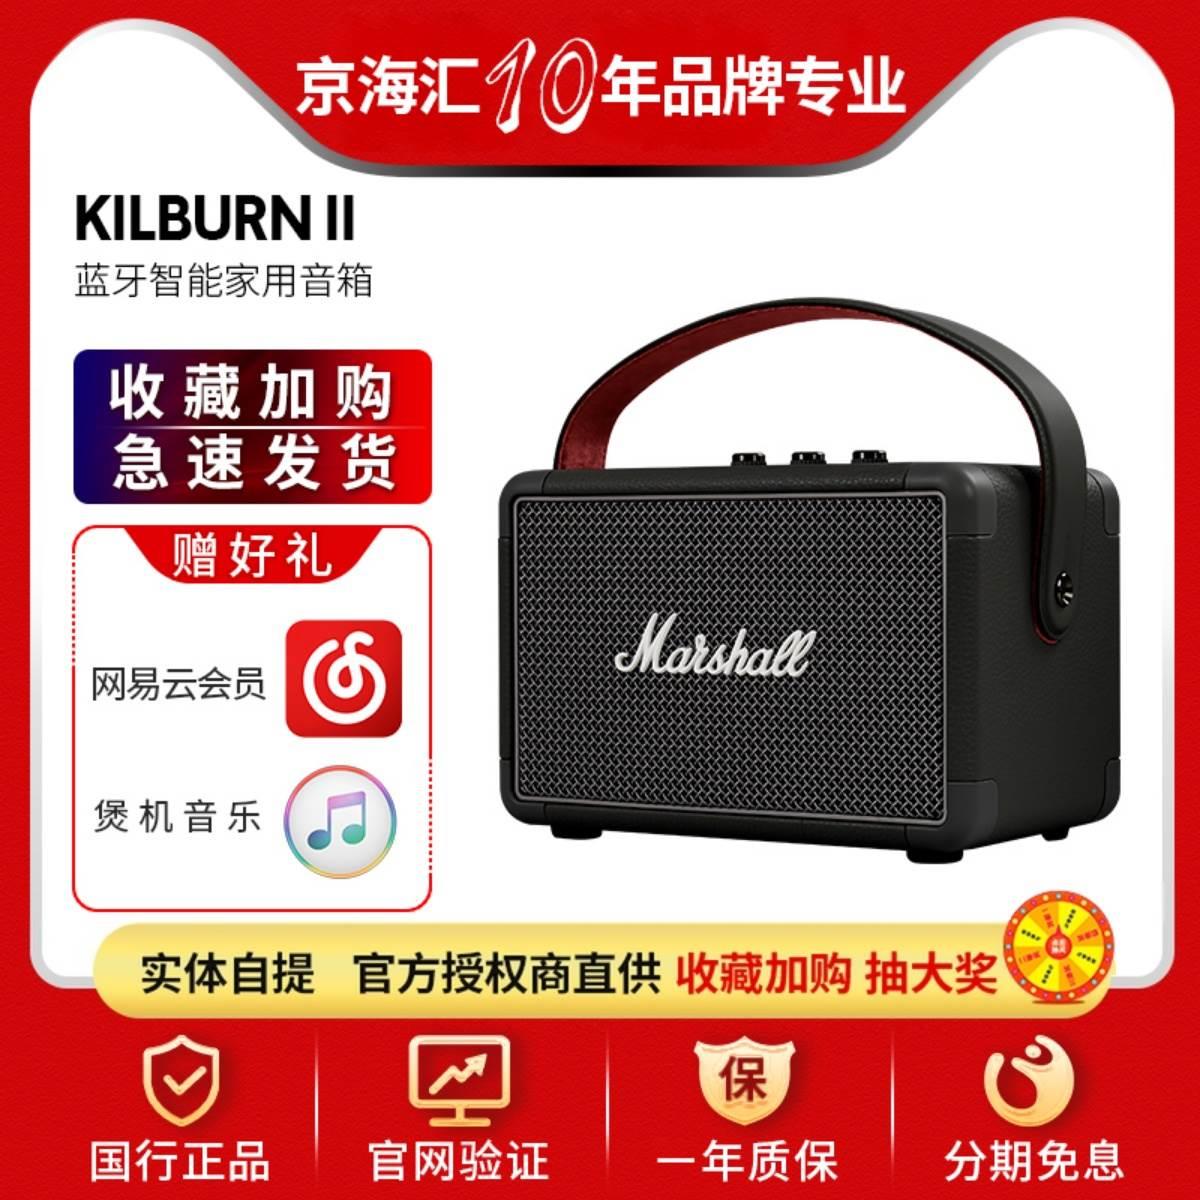 KILBURN II马歇尔2代无线蓝牙音箱便携式手提音响-封面